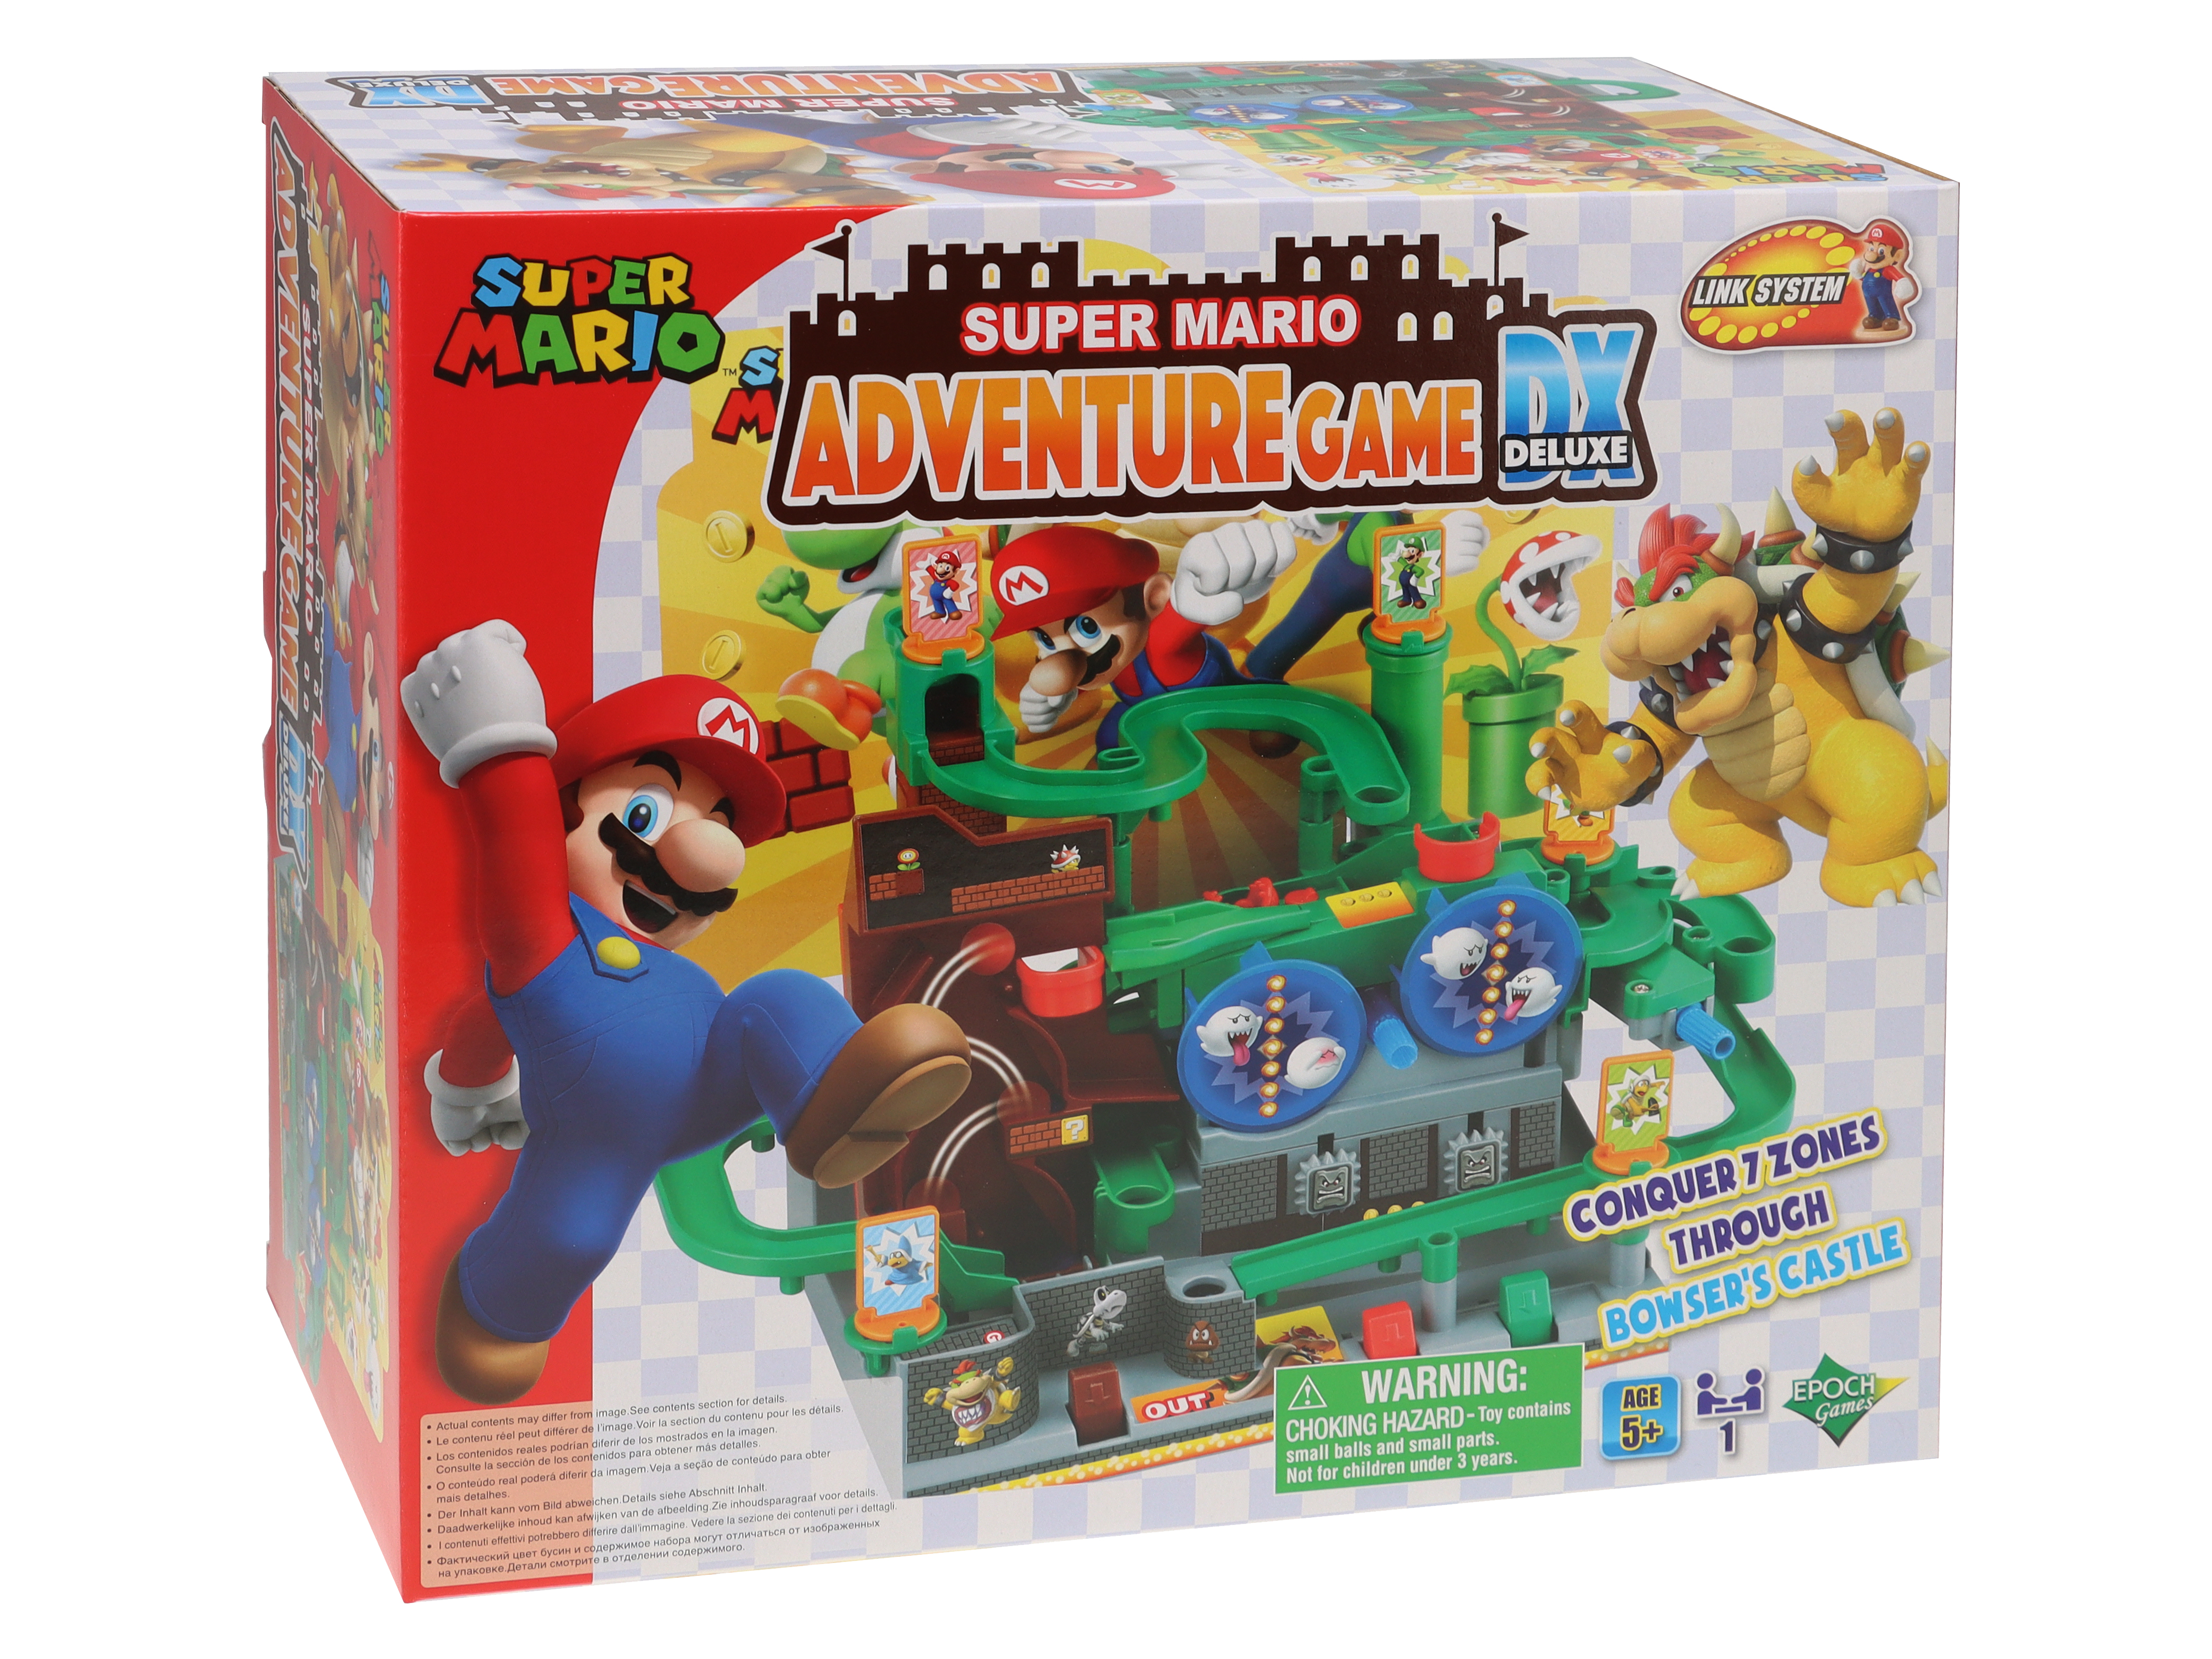 Super mario adventure game dx - Super Mario